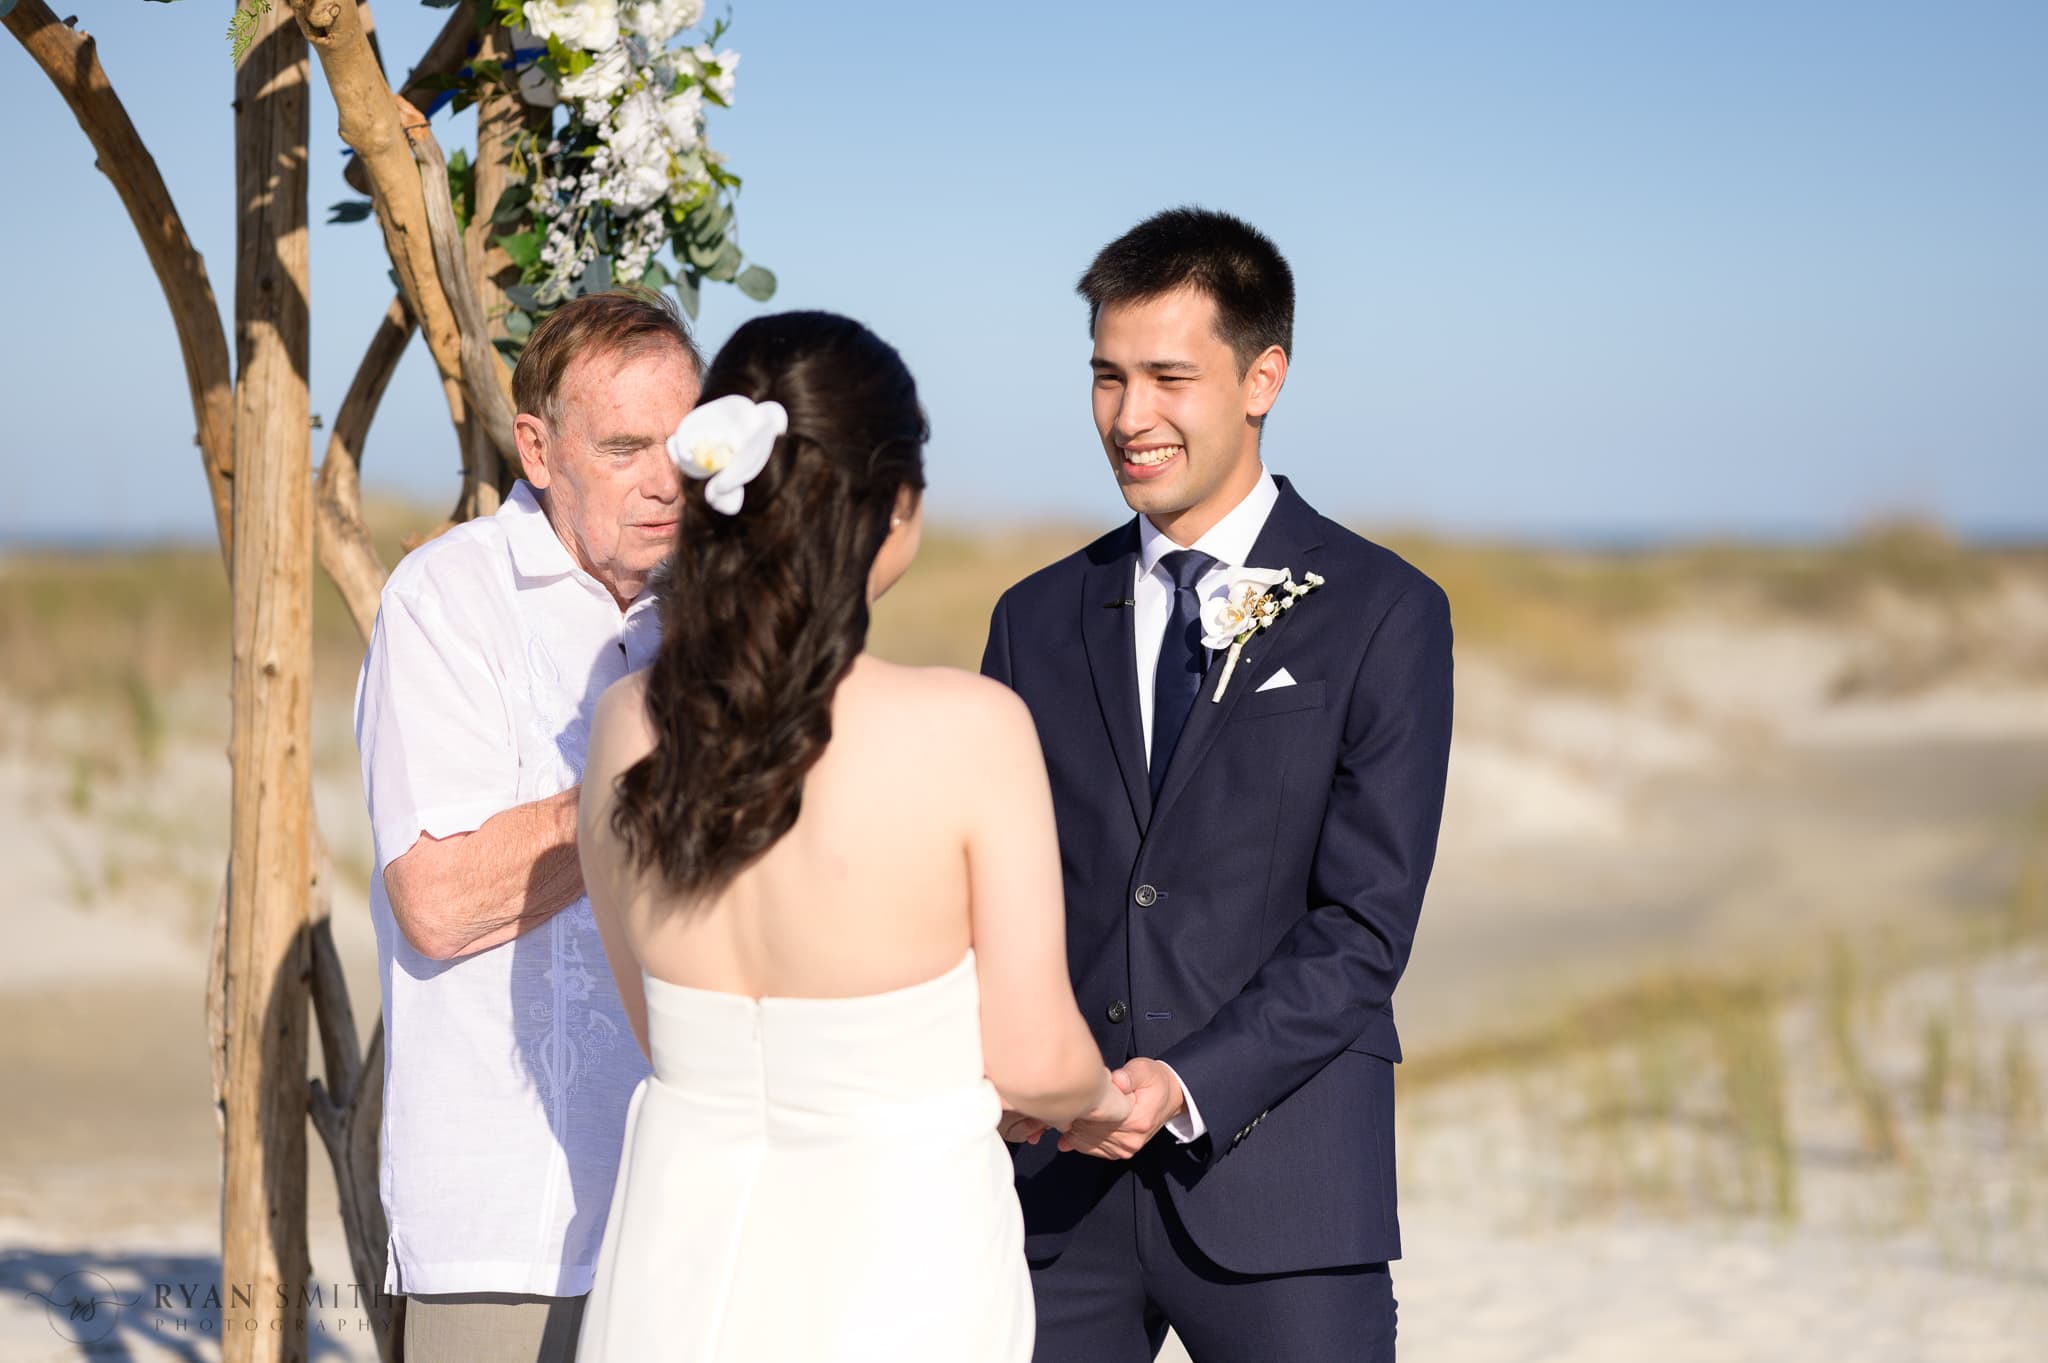 Wedding vows - Cherry Grove Point - North Myrtle Beach